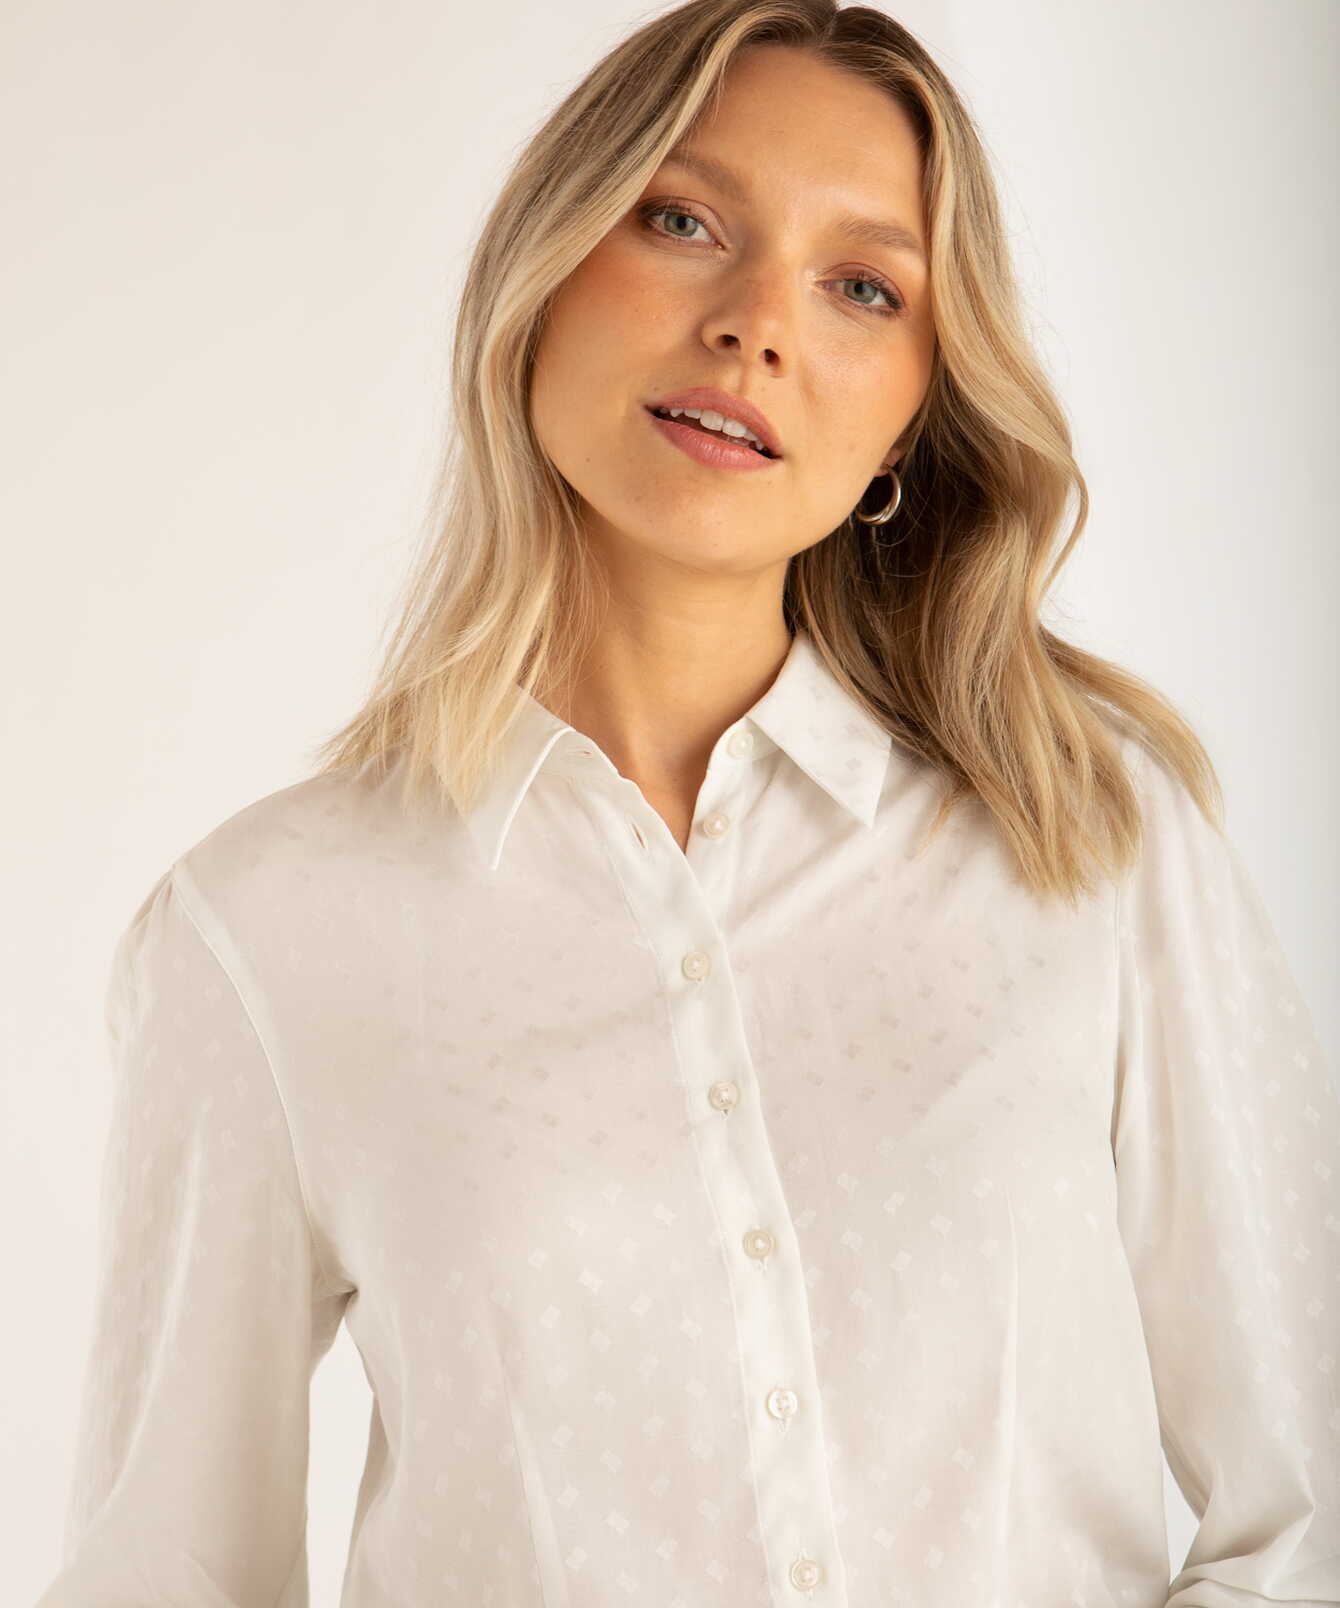 Shirt Cora Romb White Jacquard Blouse The Shirt Factory